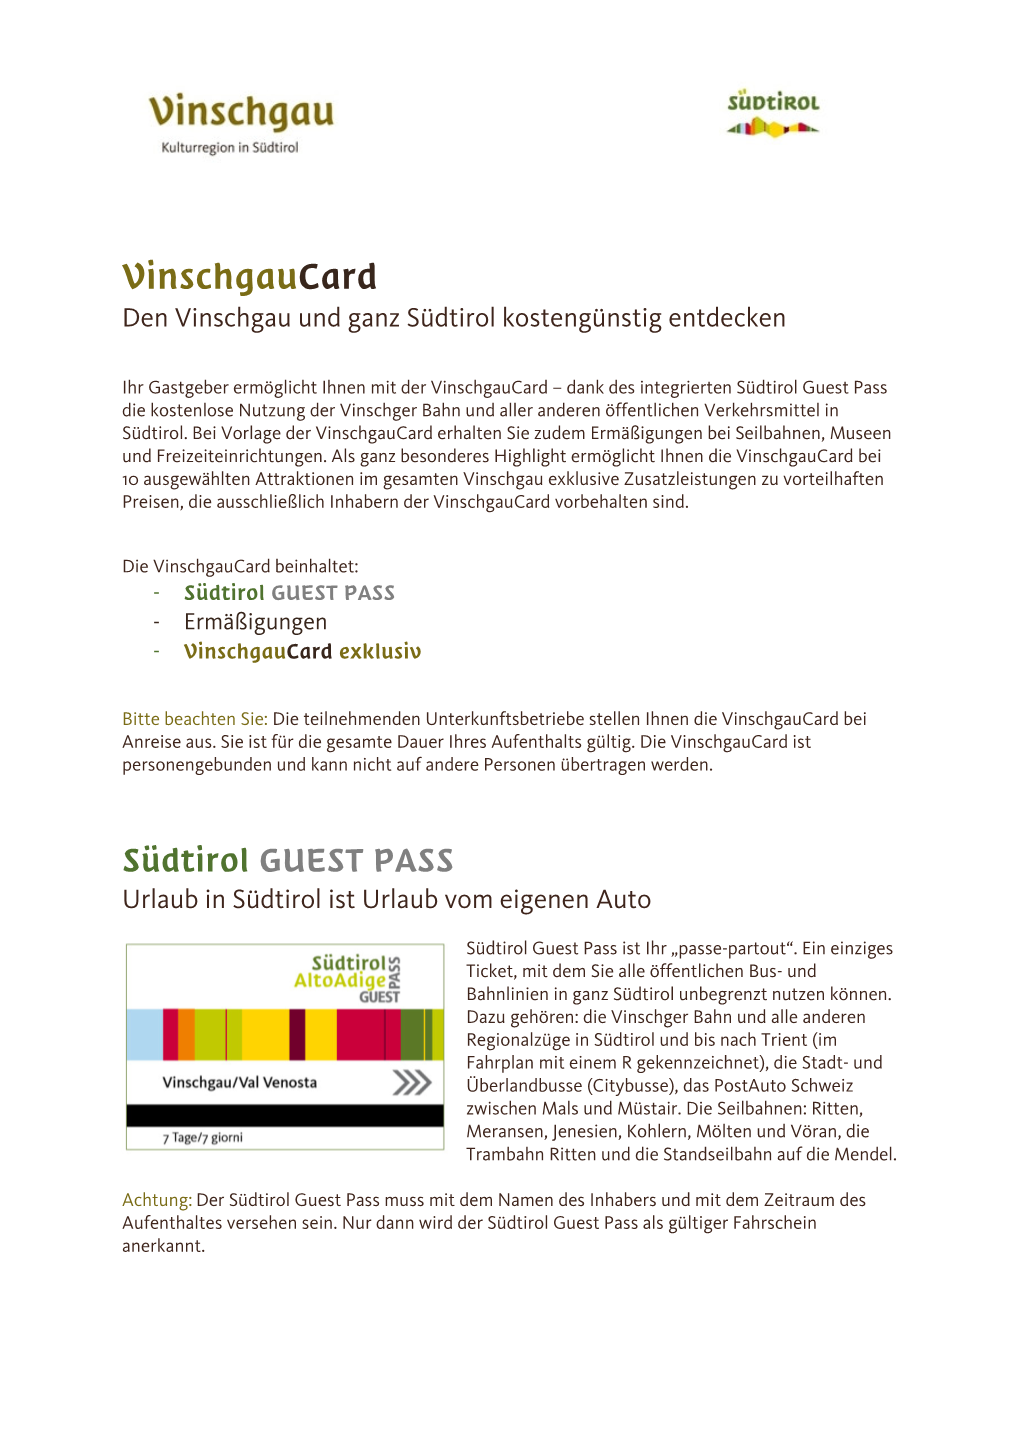 Vinschgaucard – Dank Des Integrierten Südtirol Guest Pass Die Kostenlose Nutzung Der Vinschger Bahn Und Aller Anderen Öffentlichen Verkehrsmittel in Südtirol